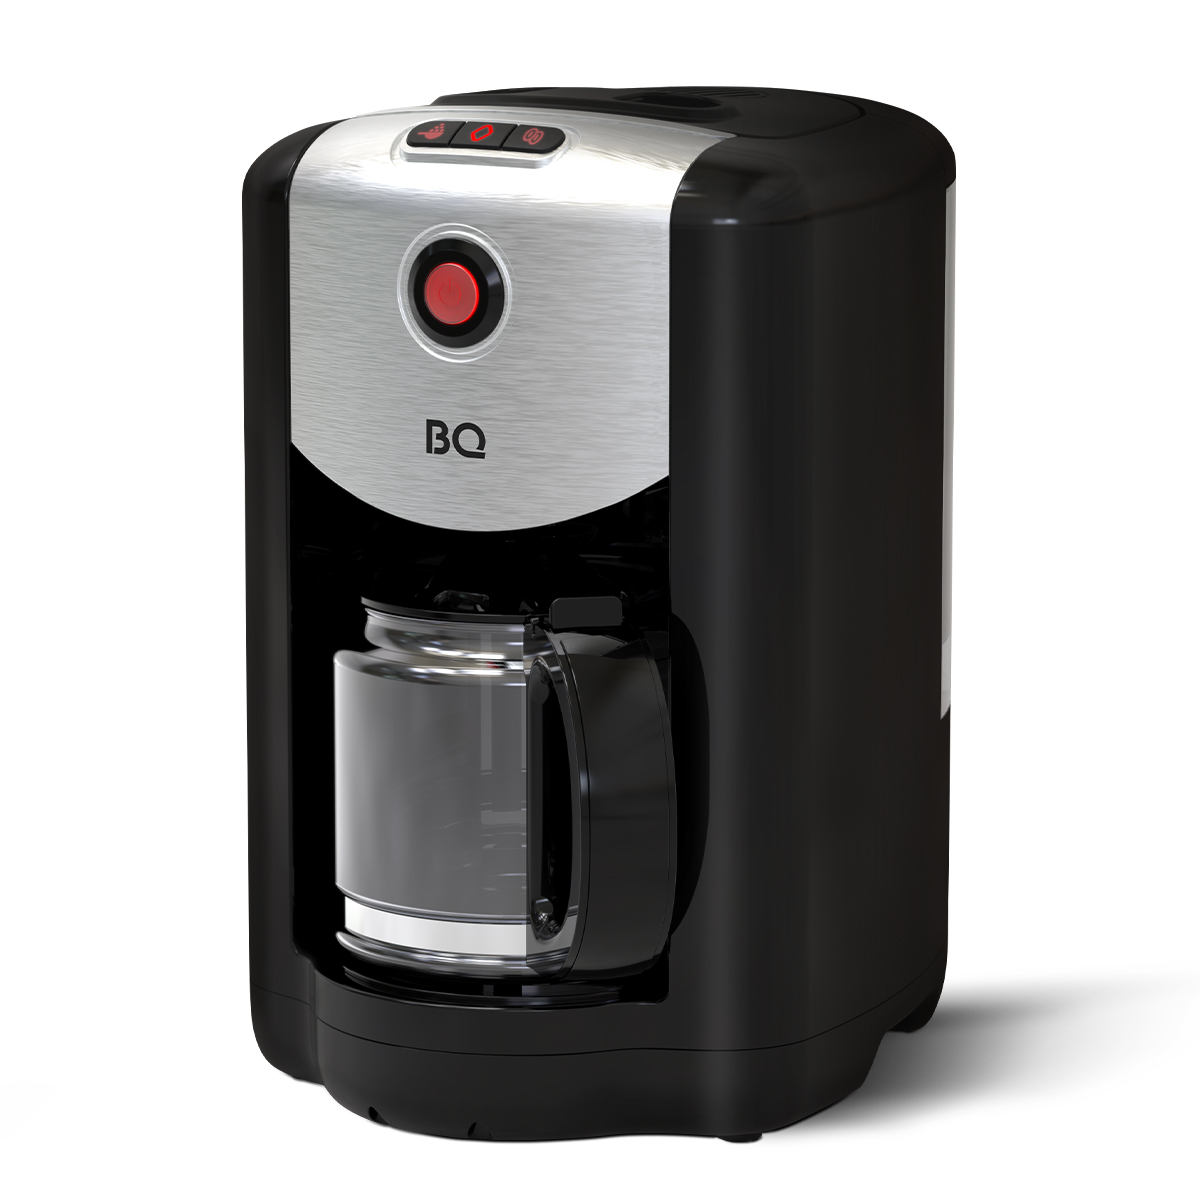 Кофеварка капельного типа BQ CM1009 серебристый, черный капельная кофеварка со встроенной кофемолкой bq cm7002 розовое золото